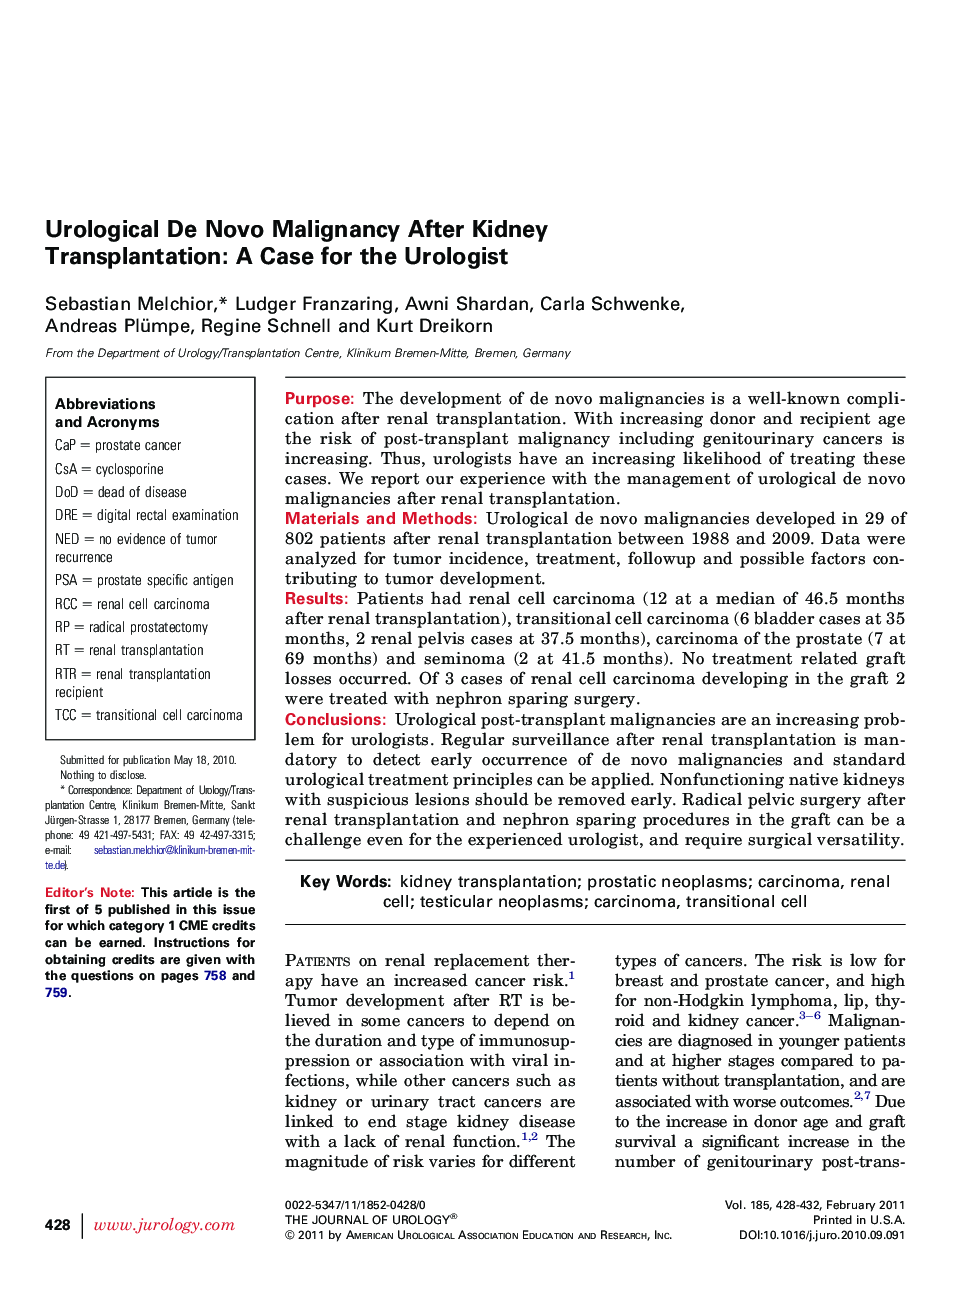 Urological De Novo Malignancy After Kidney Transplantation: A Case for the Urologist 